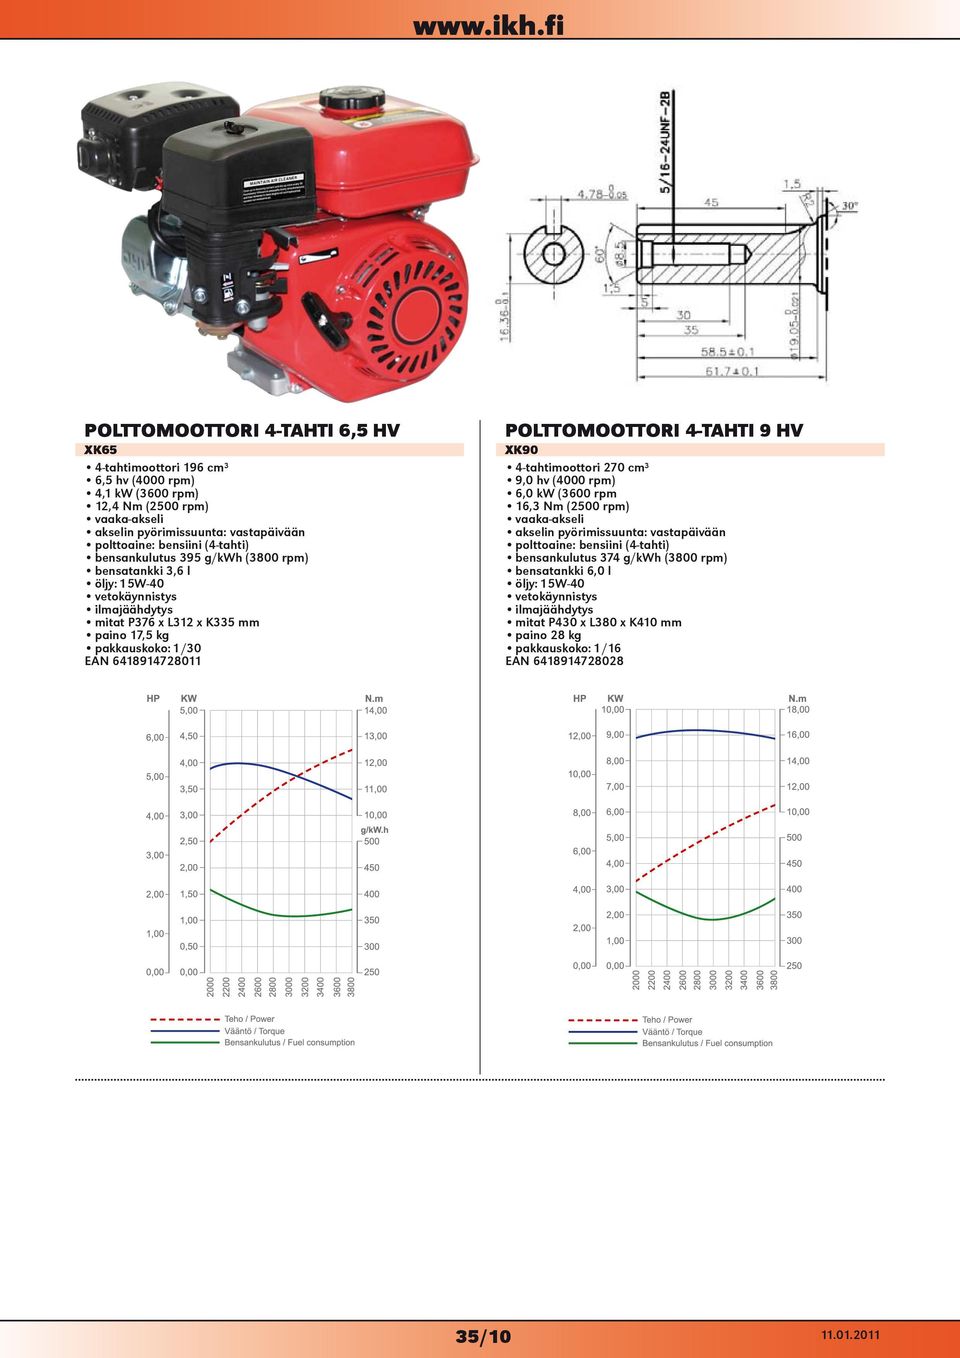 POLTTOMOOTTORI 4-TAHTI 9 HV XK90 4-tahtimoottori 270 cm³ 9,0 hv (4000 rpm) 6,0 kw (3600 rpm 16,3 Nm (2500 rpm) vaaka-akseli akselin pyörimissuunta: vastapäivään